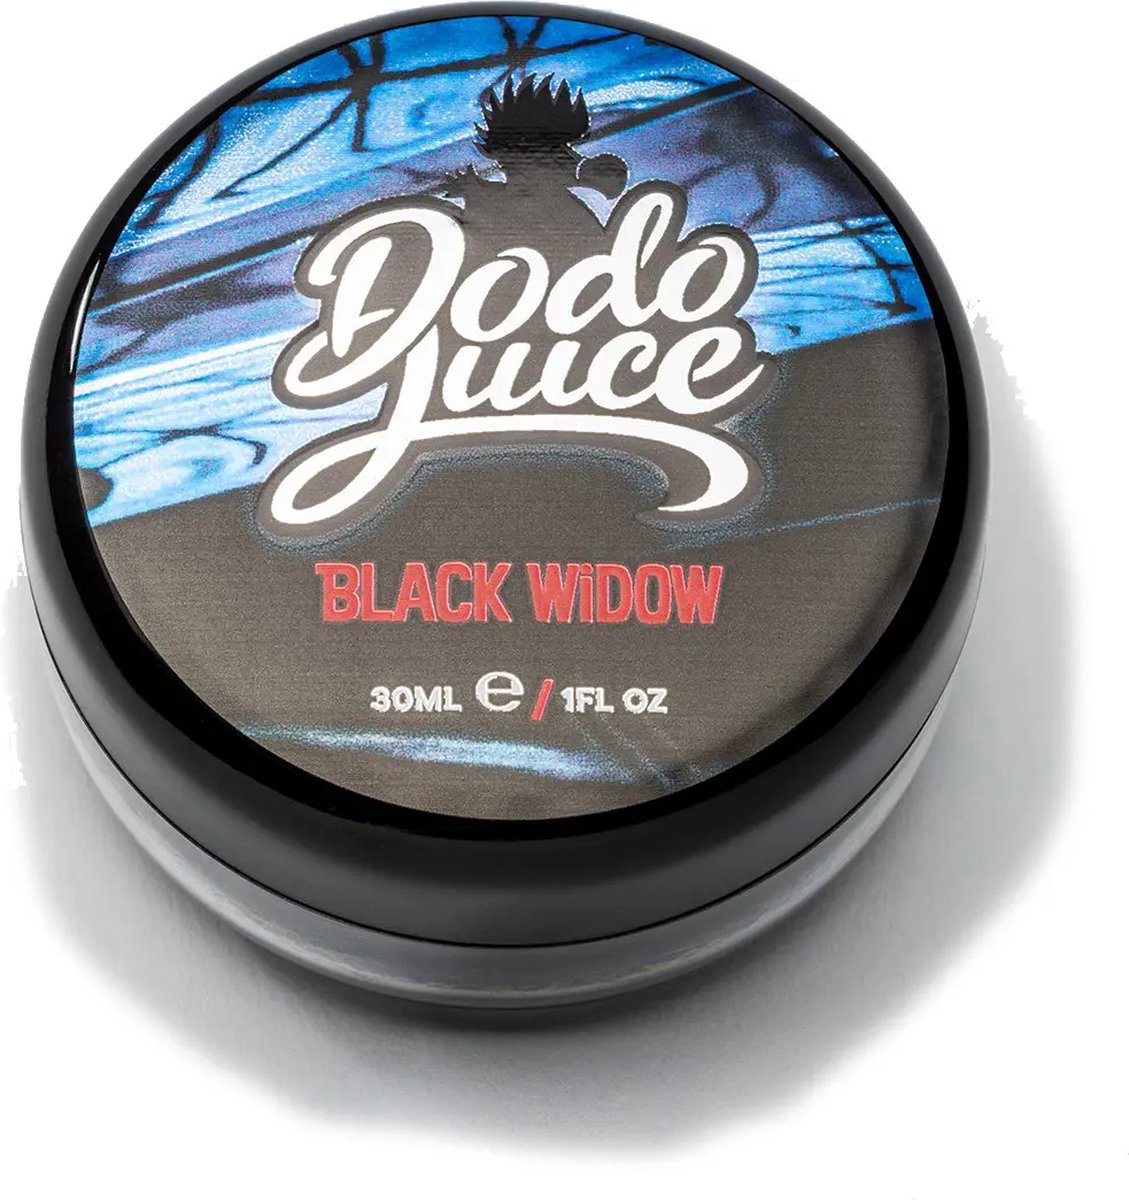 Dodo Juice - Black Widow - 30ml - Wax